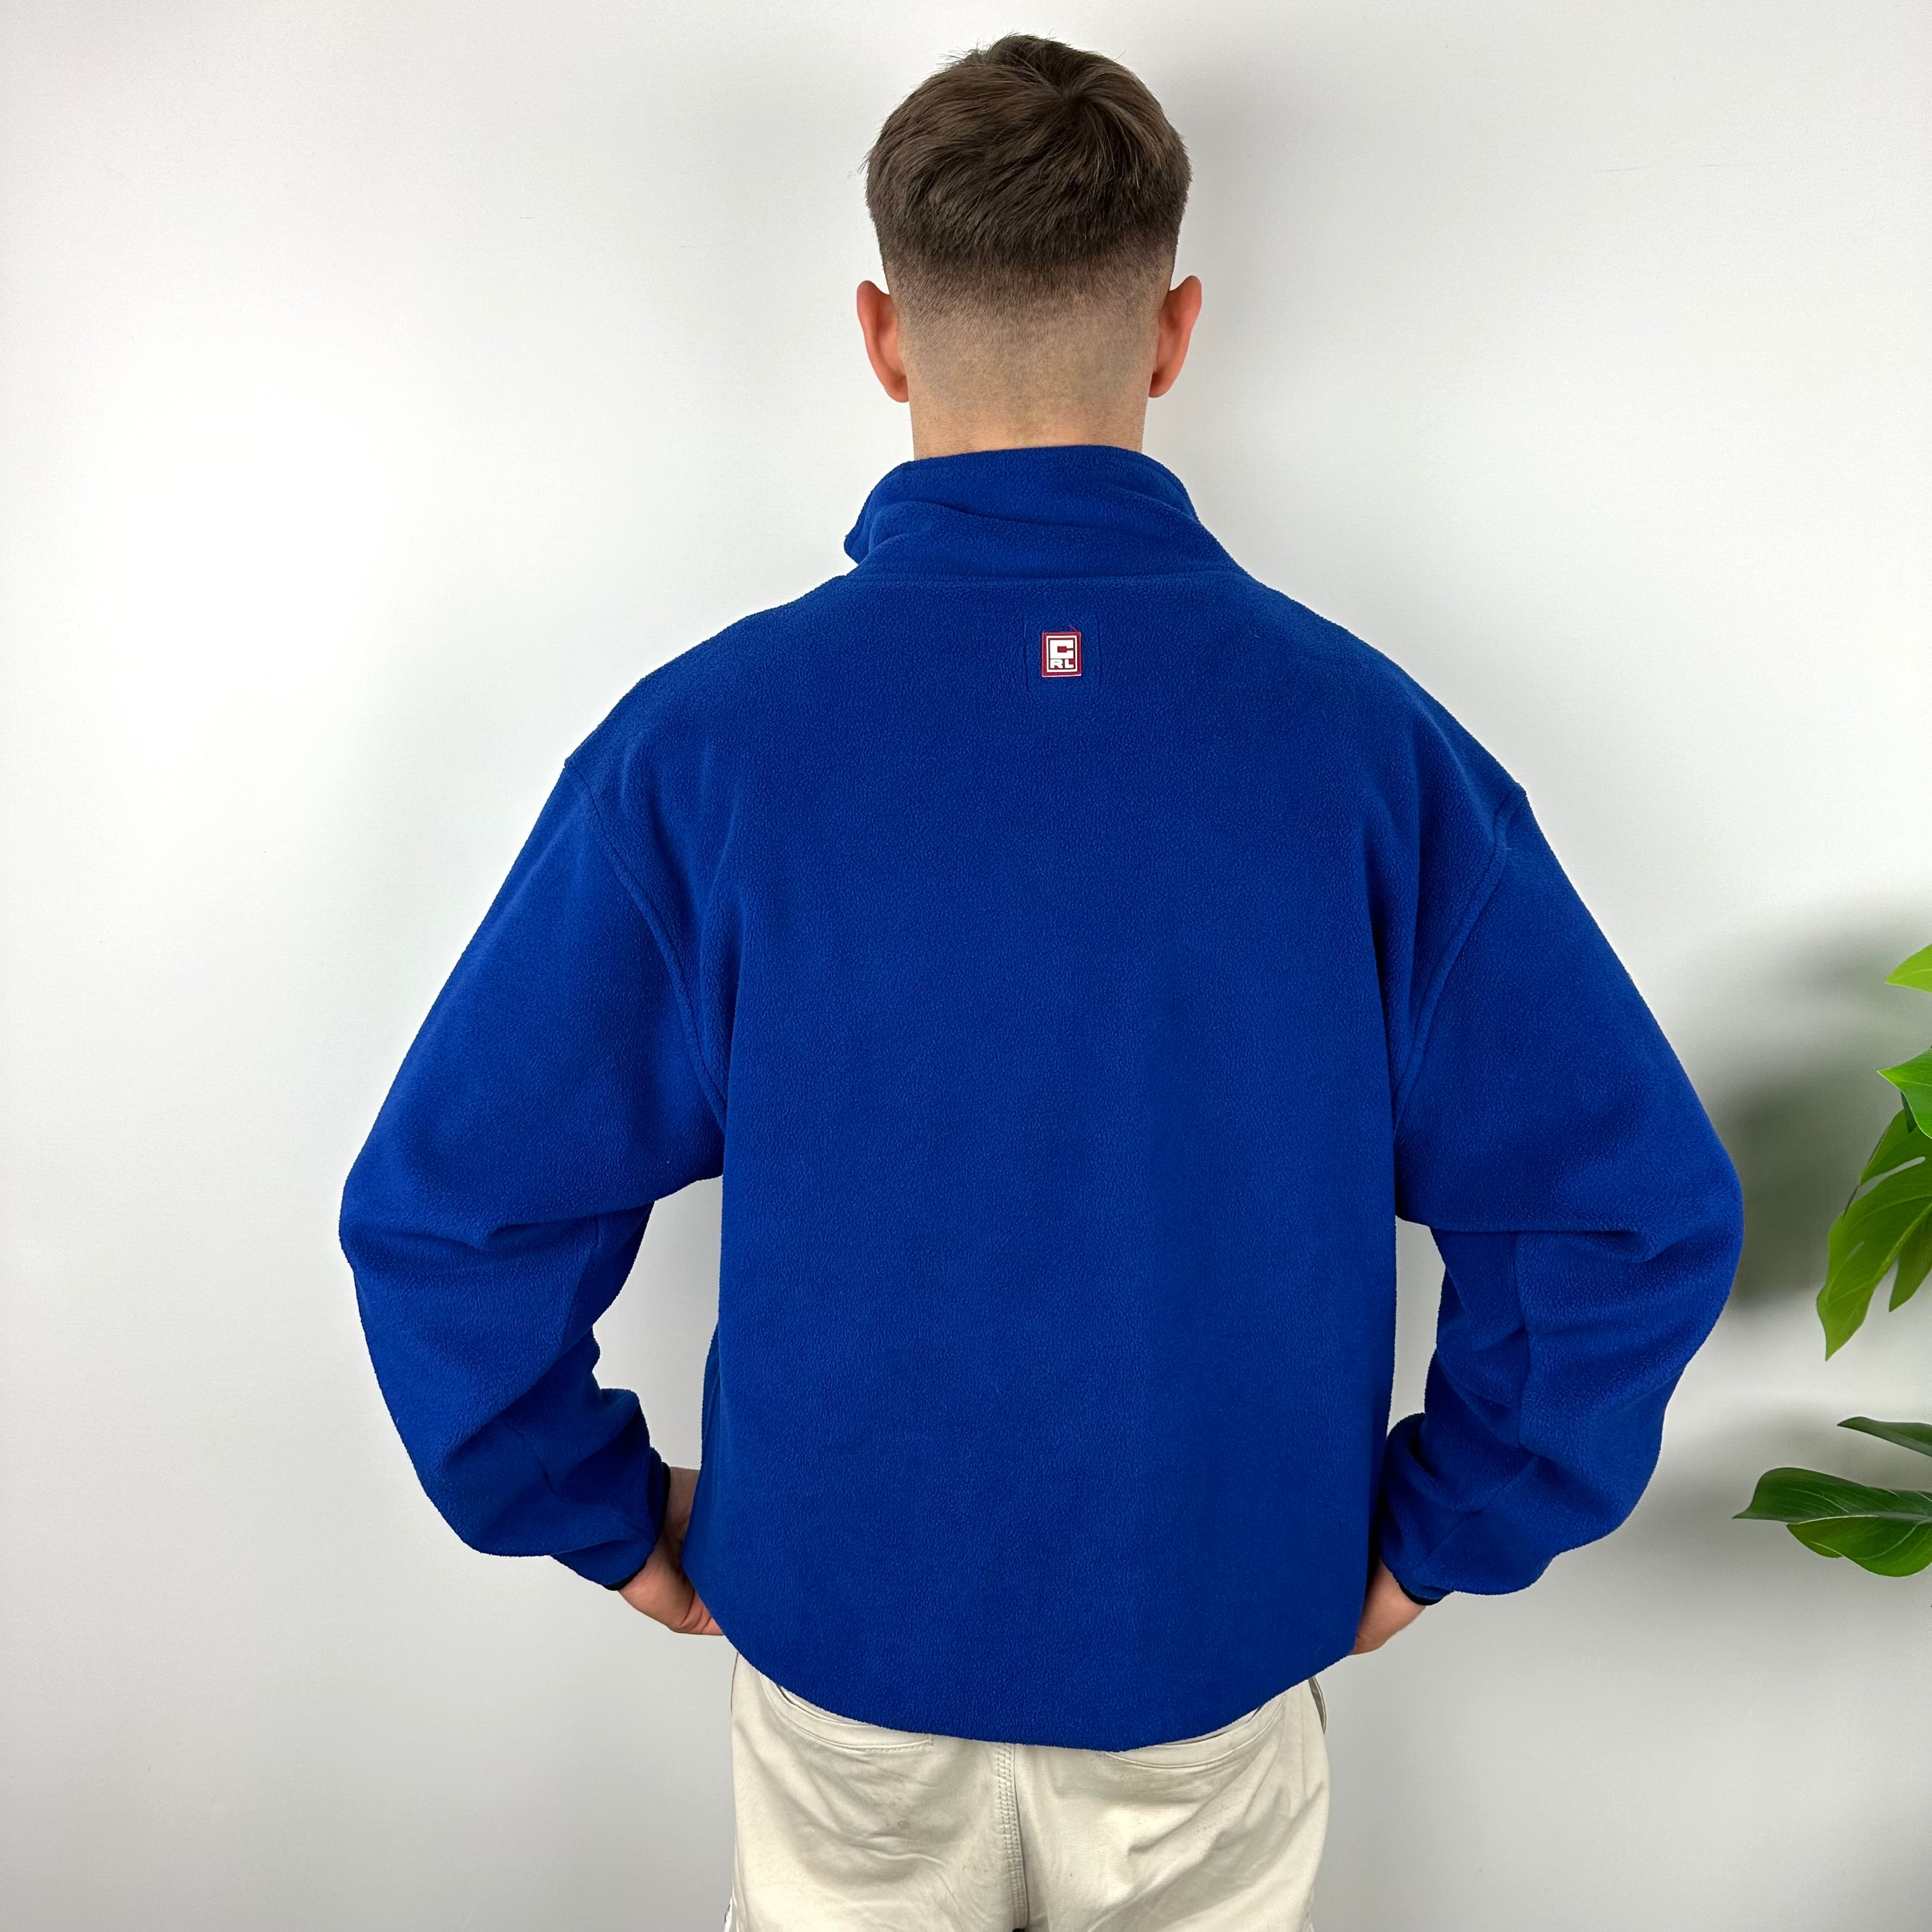 Chaps Ralph Lauren Blue Embroidered Spell Out Teddy Bear Fleece Quarter Zip Sweatshirt (L)